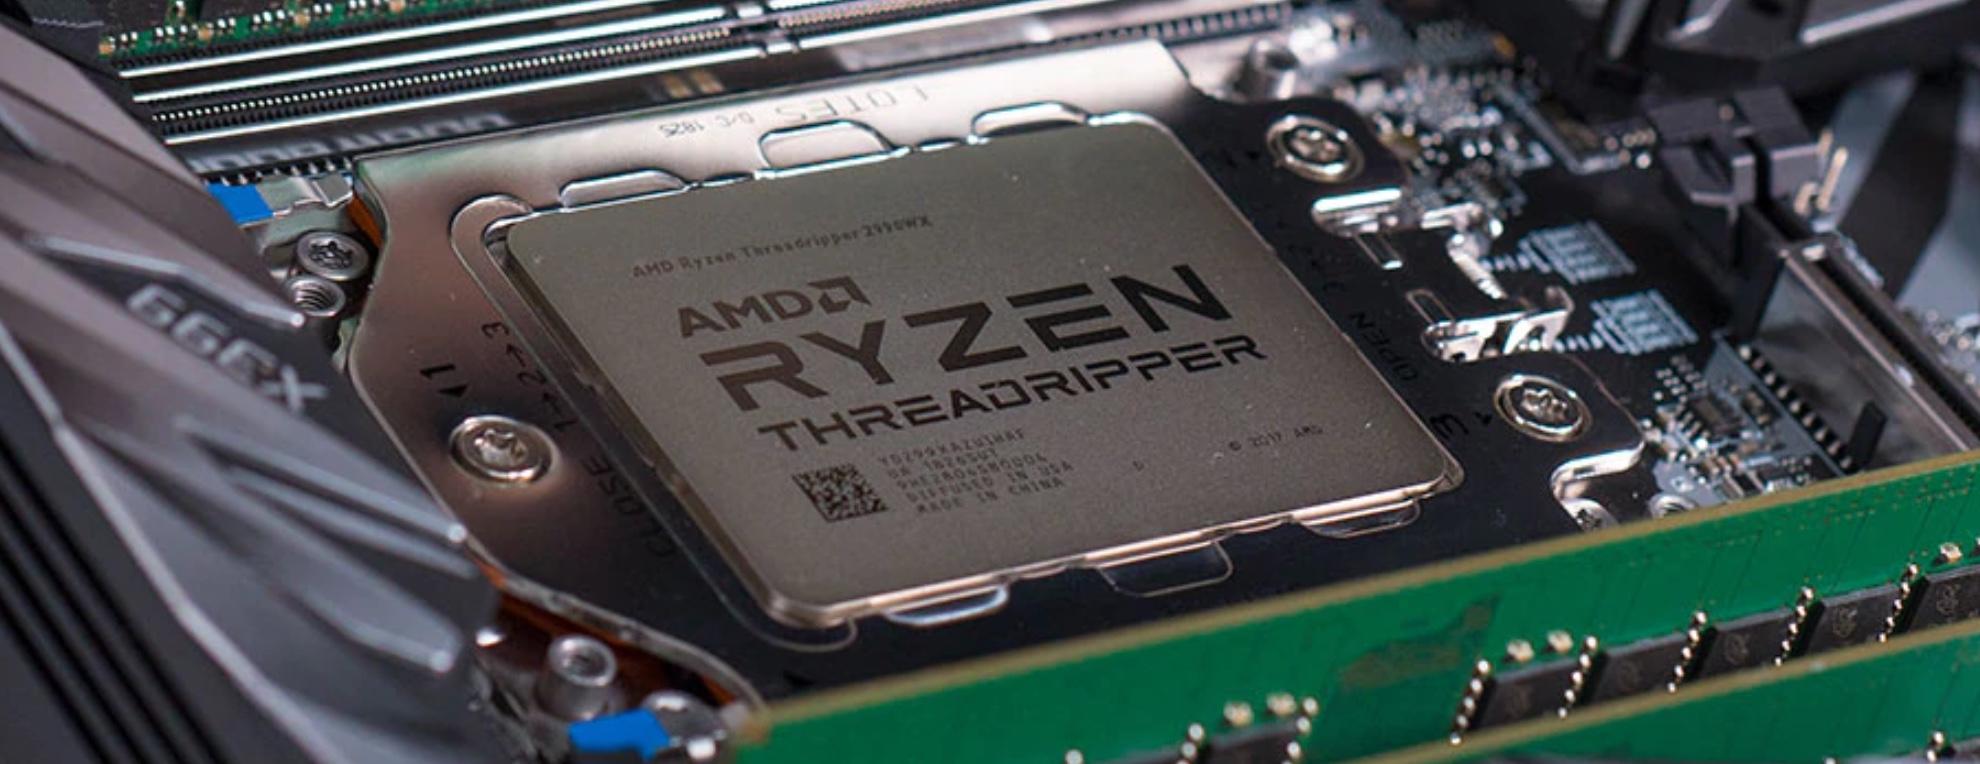 AMD представила процессоры Threadripper — самые быстрые CPU для десктопов - 1